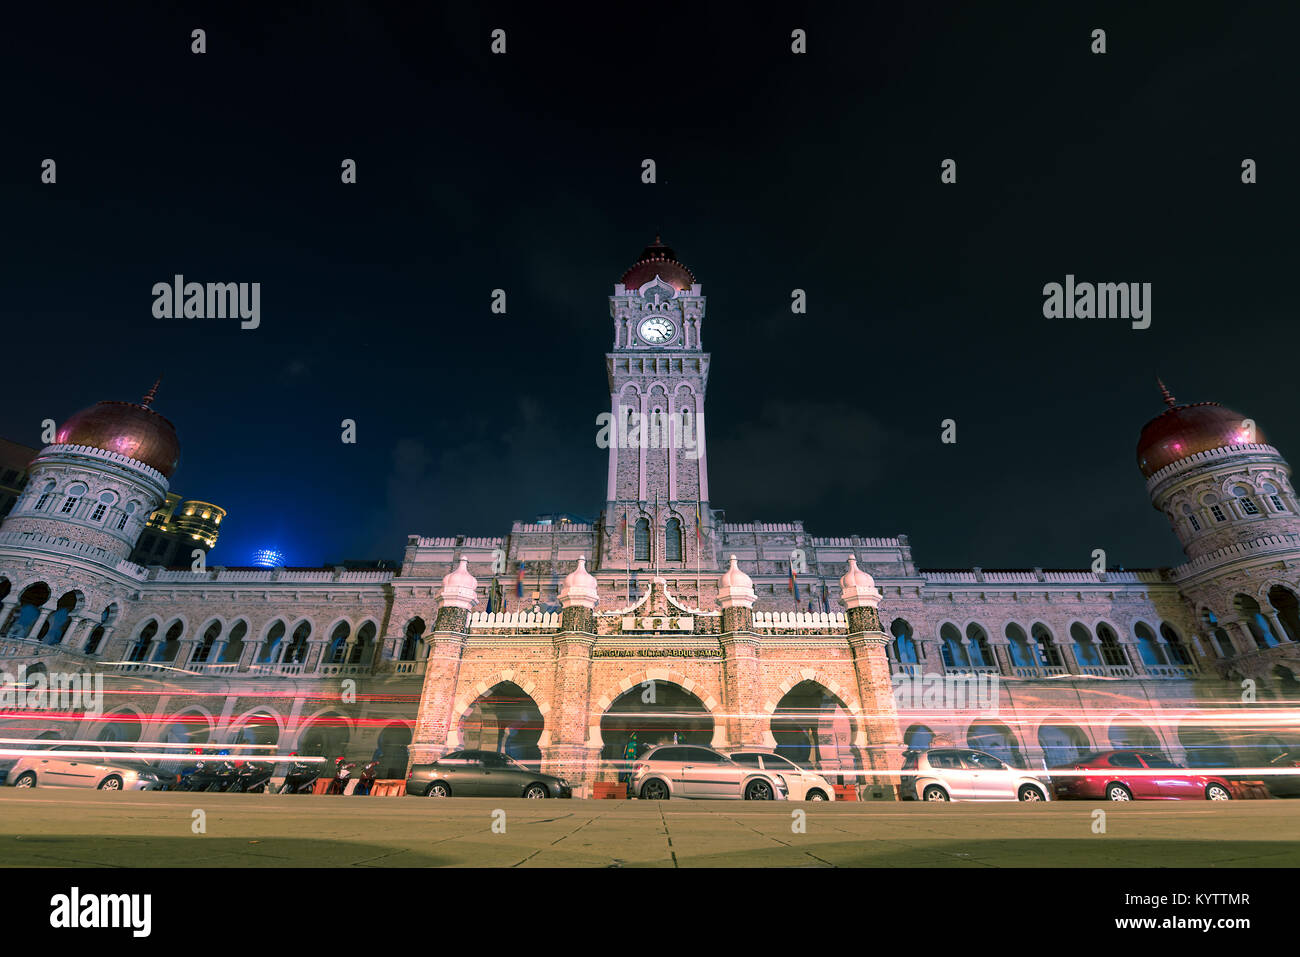 Sultan Abdul Samad Building, Kuala Lumpur, Malaisie. Photo de nuit le bâtiment impressionnant, ses tours et ses coupoles de cuivre. Banque D'Images